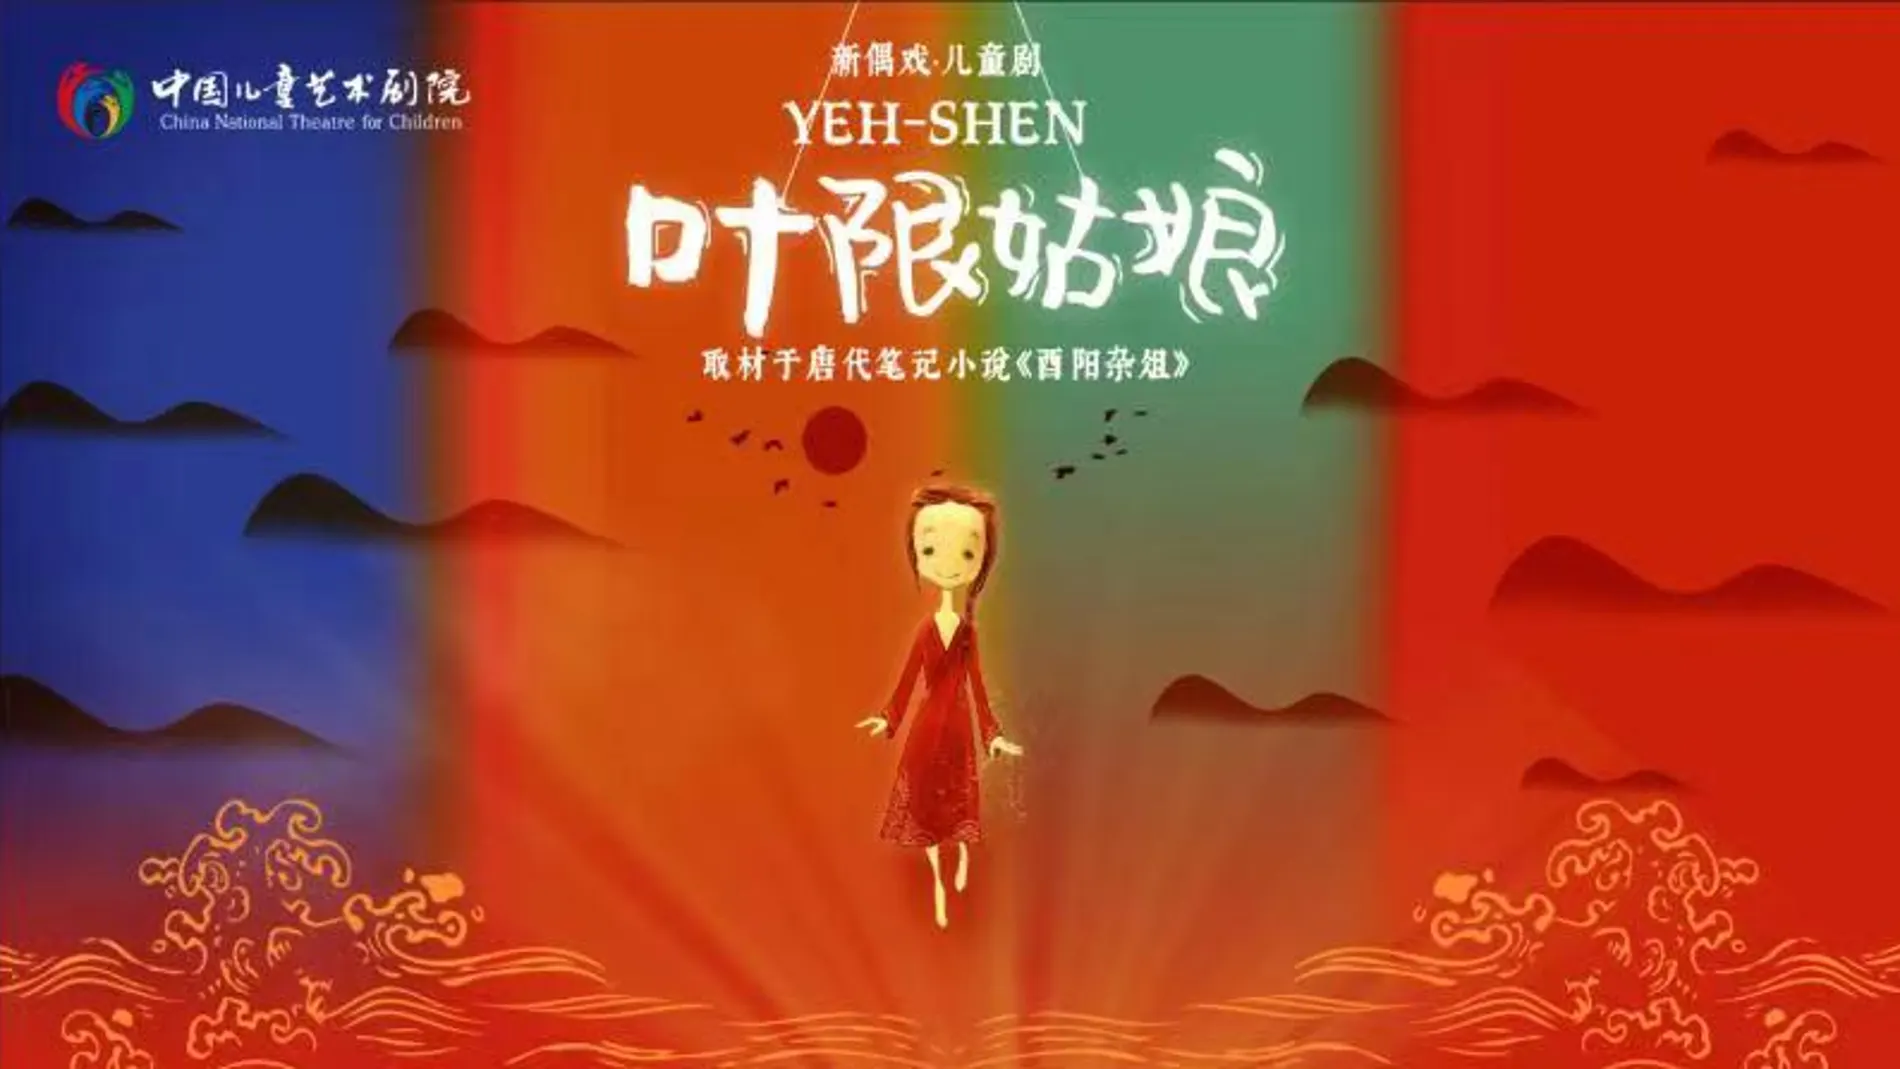 Estrenan Espectáculo de marionetas la “Cenicienta” de China